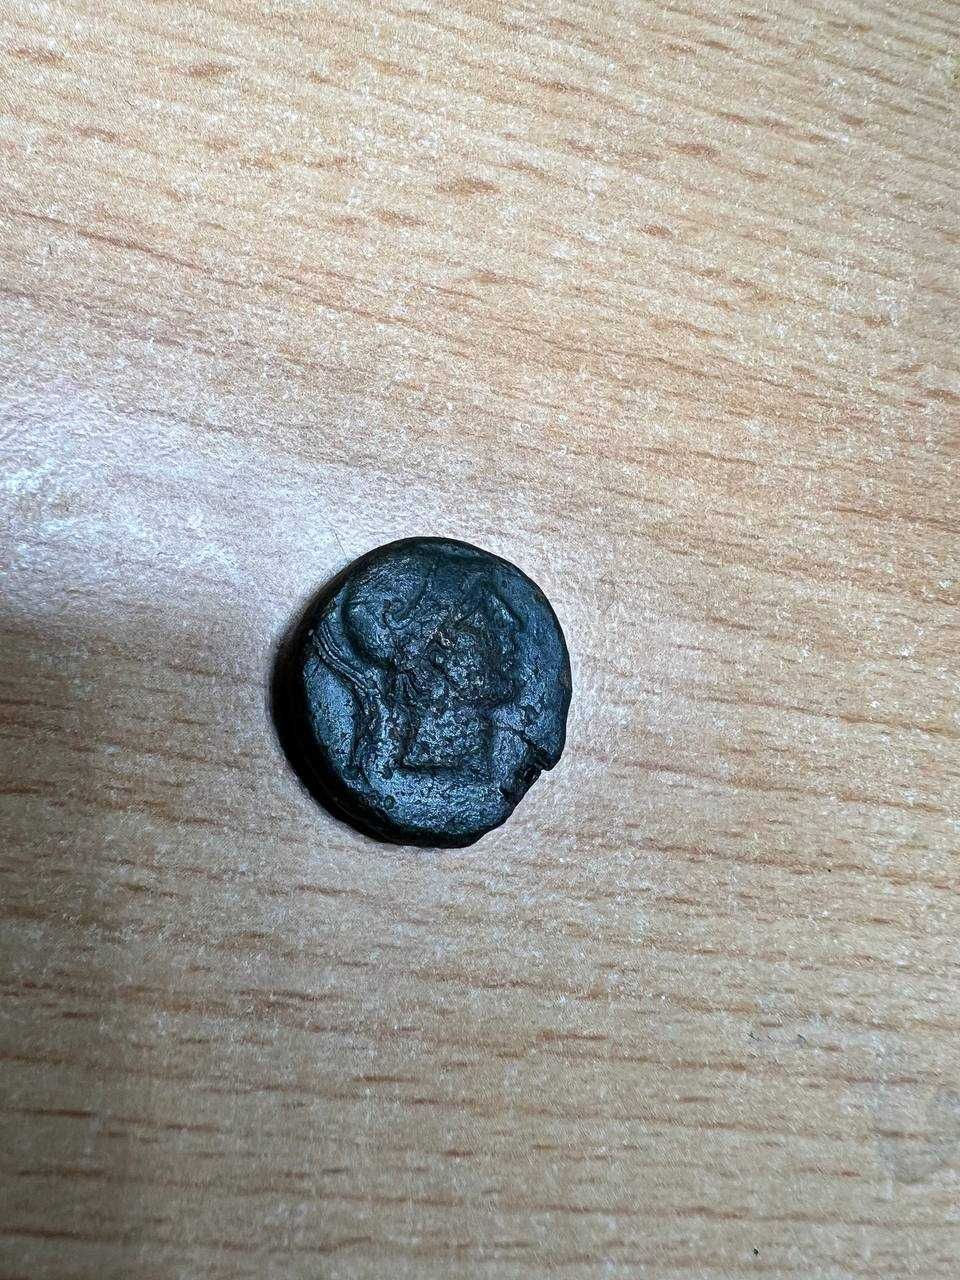 Античная монета, (Амис, Митридат Евпатор)